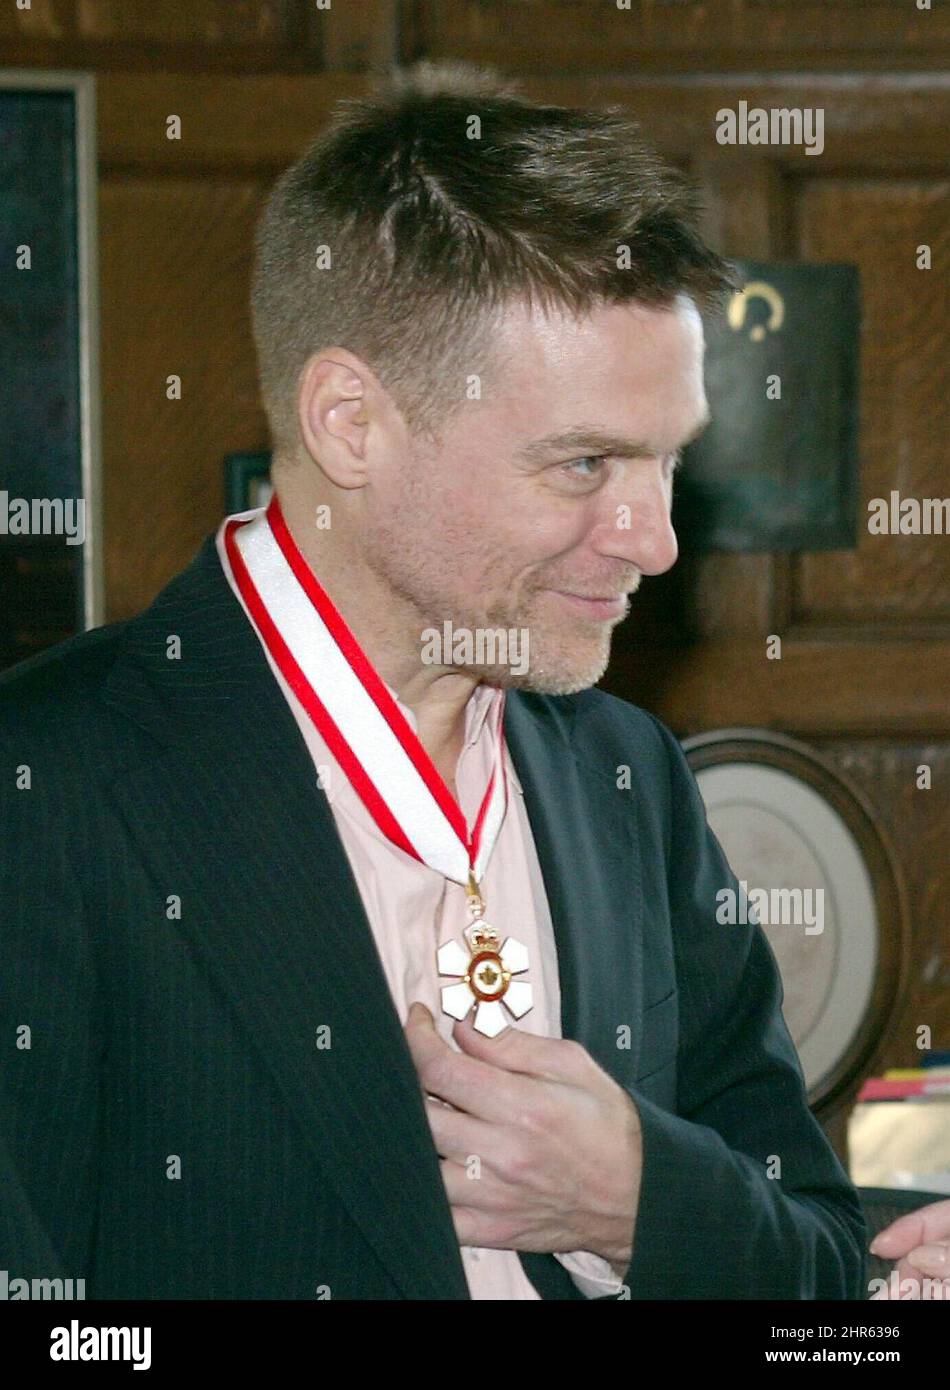 El icono pop canadiense Bryan Adams toca su medalla después de haber sido presentado con la insignia de Oficial de la Orden de Canadá por el Gobernador General Adrienne Clarkson durante una ceremonia privada en Rideau Hall en Ottawa. Foto de stock